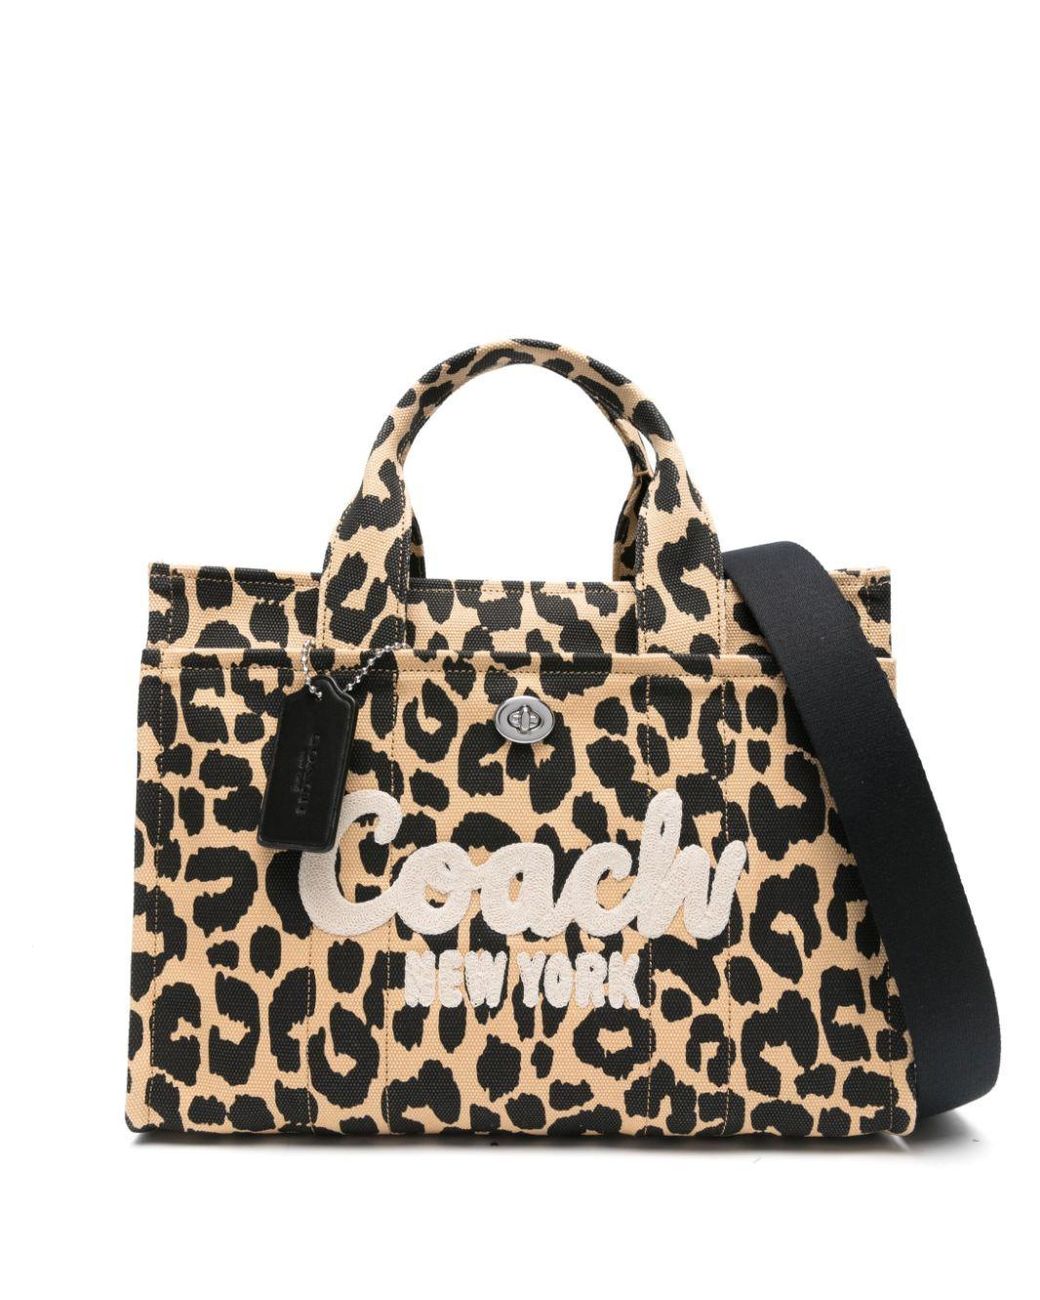 COACH Leopard-print Canvas Tote Bag in Black | Lyst Canada